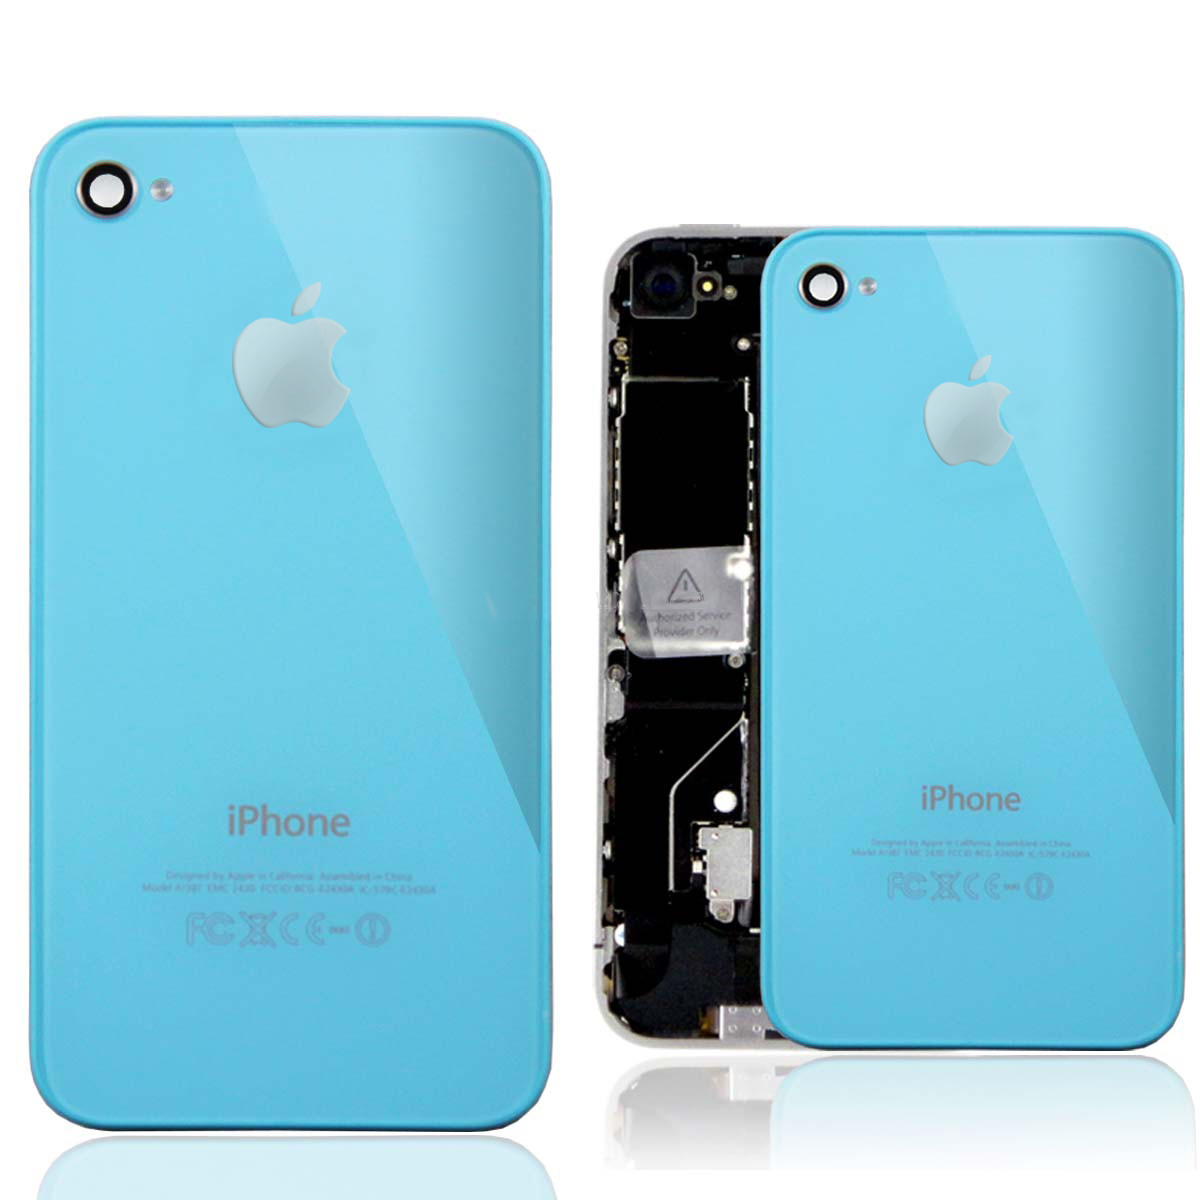 iPhone 4 Backcover - резервен заден капак за iPhone 4 (светлосин)